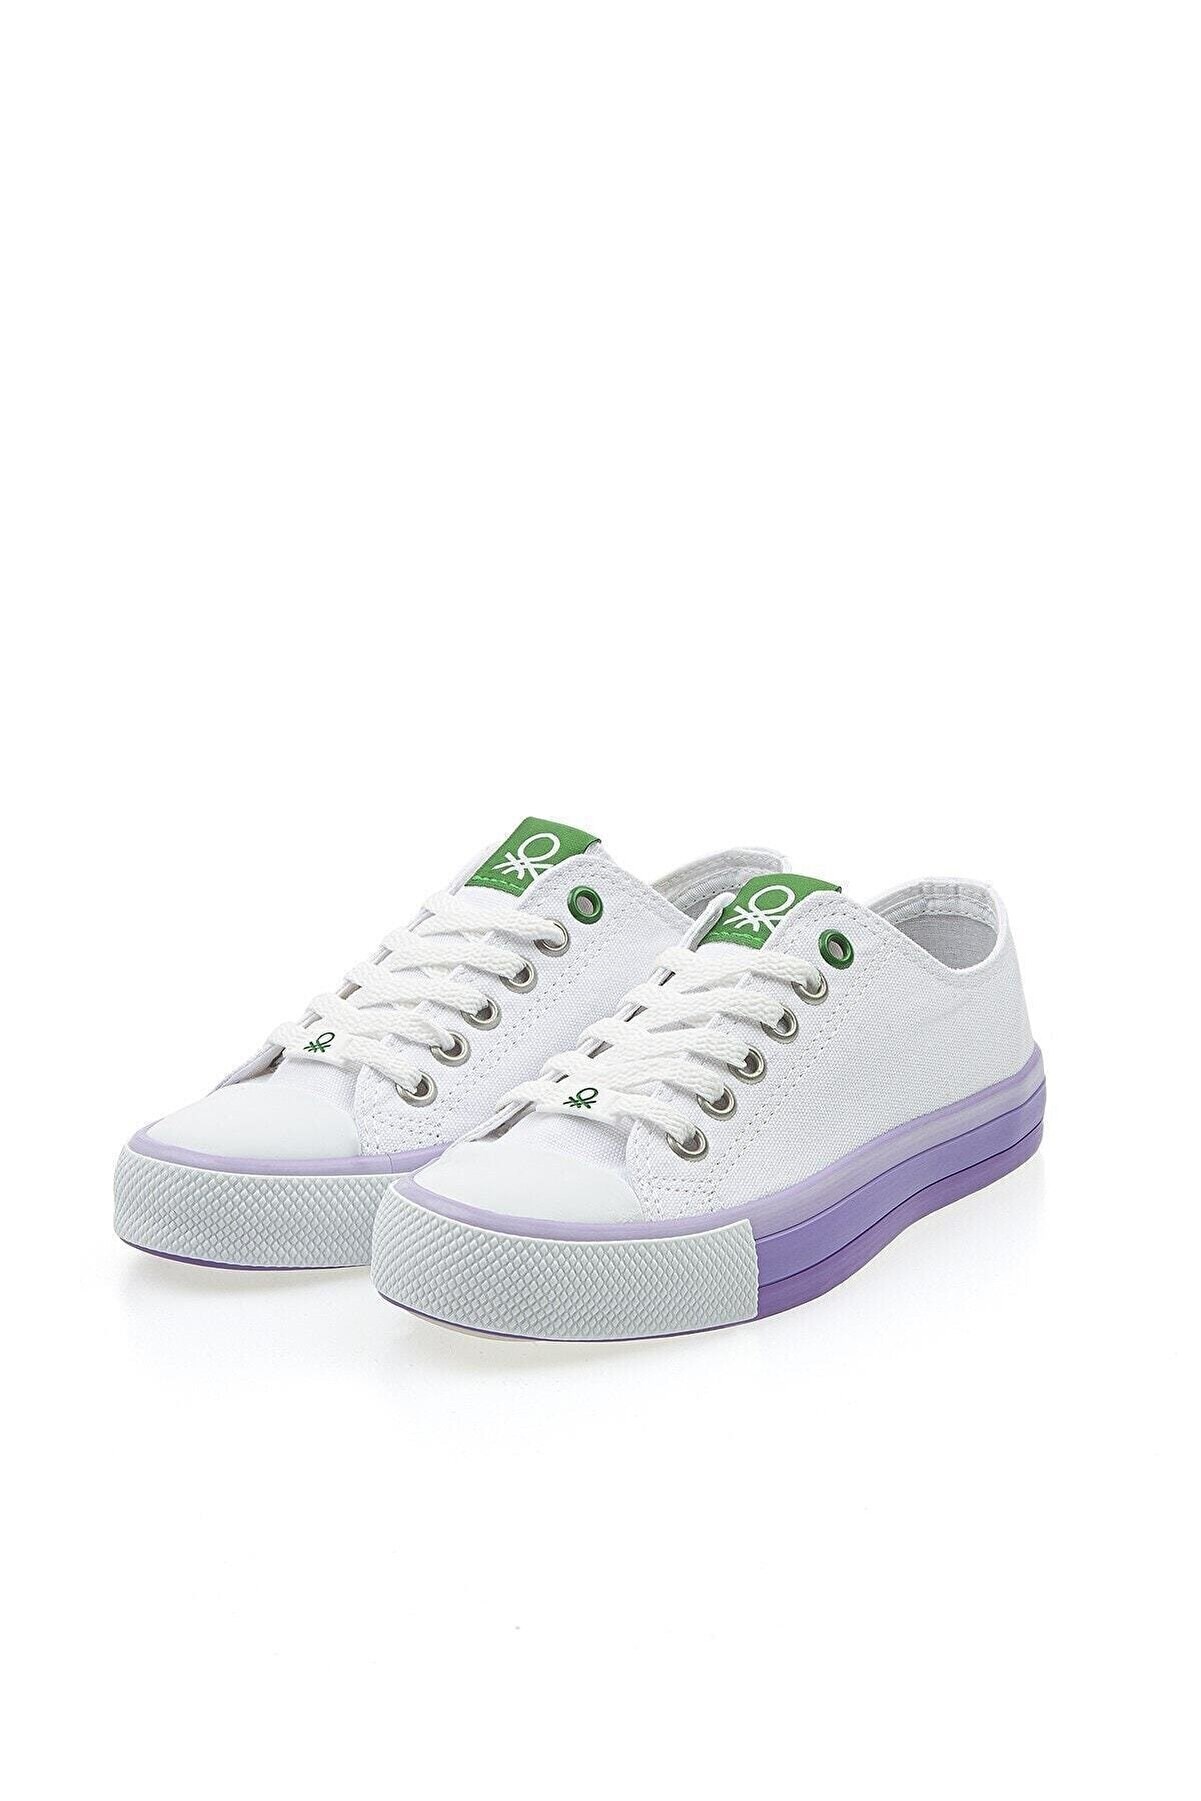 Benetton Kadın Ayakkabı BN-30176 316-Beyaz-Lila (Beyaz Tbn)